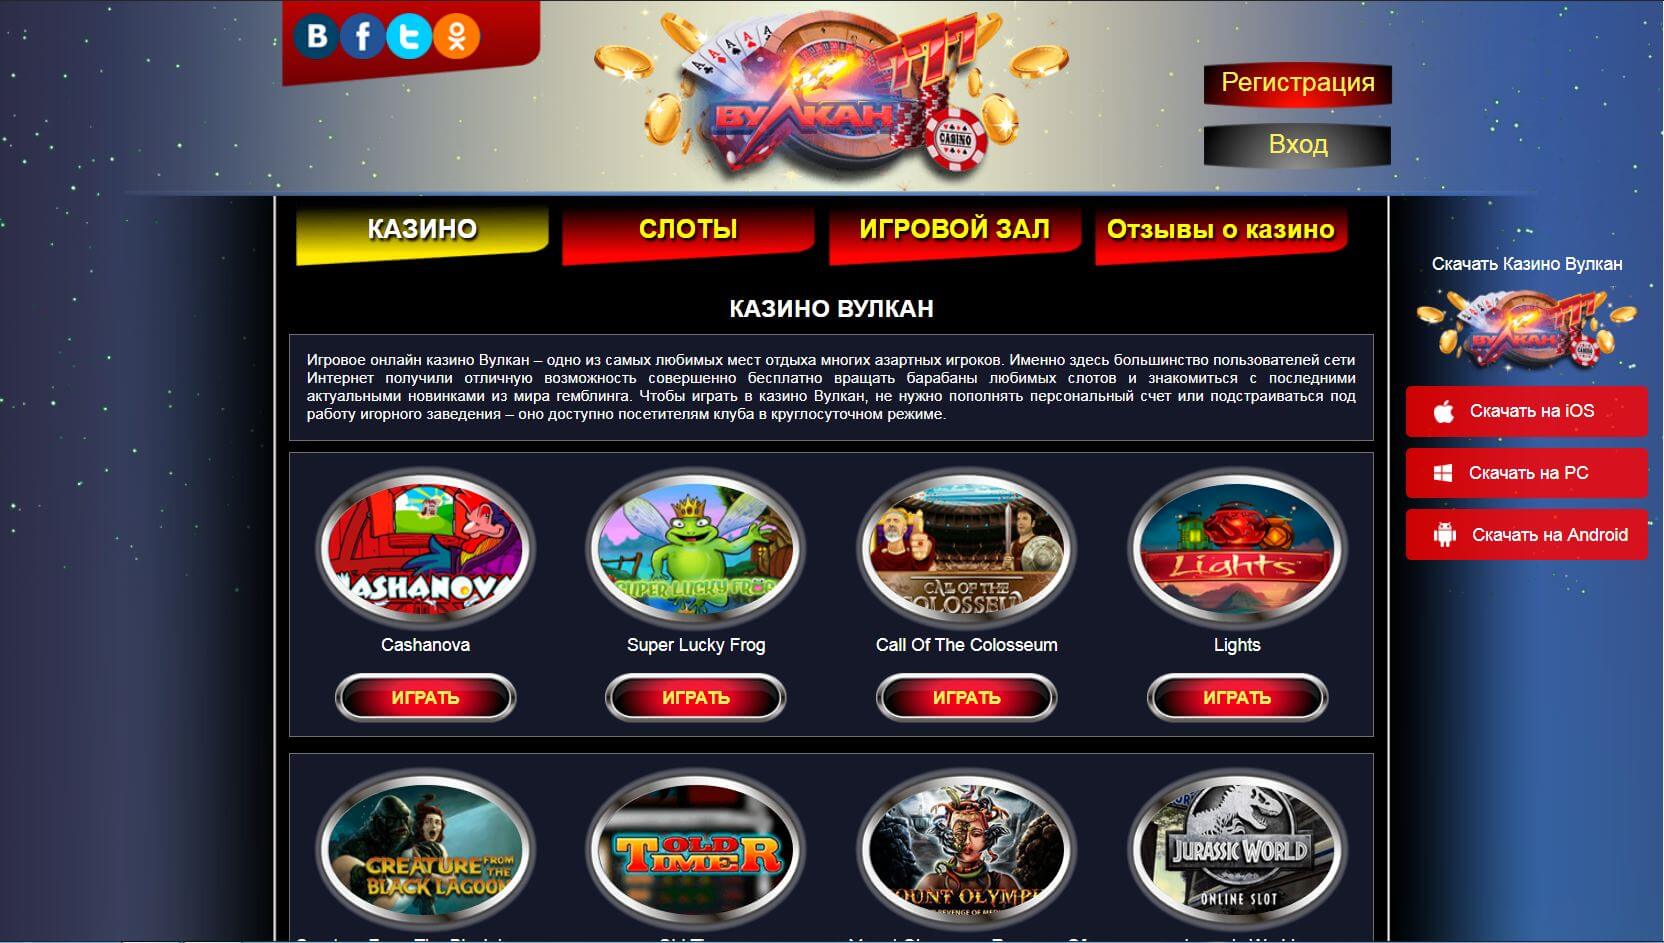 Online casino mit paysafecard